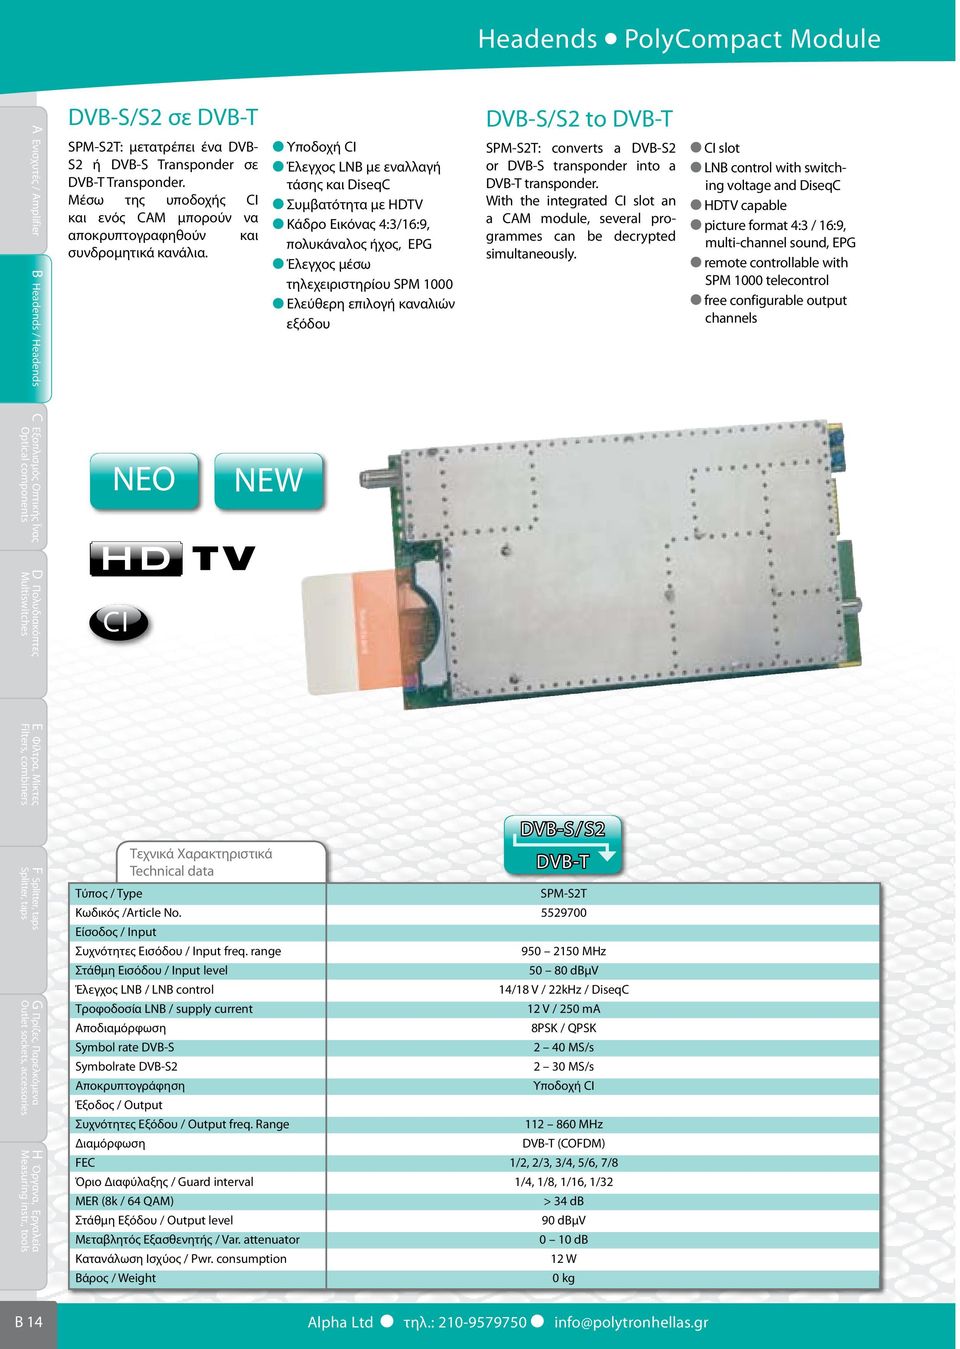 ΝΕΟ NEW Υποδοχή CI Έλεγχος LNB με εναλλαγή τάσης και DiseqC Συμβατότητα με HDTV Κάδρο Εικόνας 4:3/16:9, πολυκάναλος ήχος, EPG Έλεγχος μέσω τηλεχειριστηρίου SPM 1000 Ελεύθερη επιλογή καναλιών εξόδου